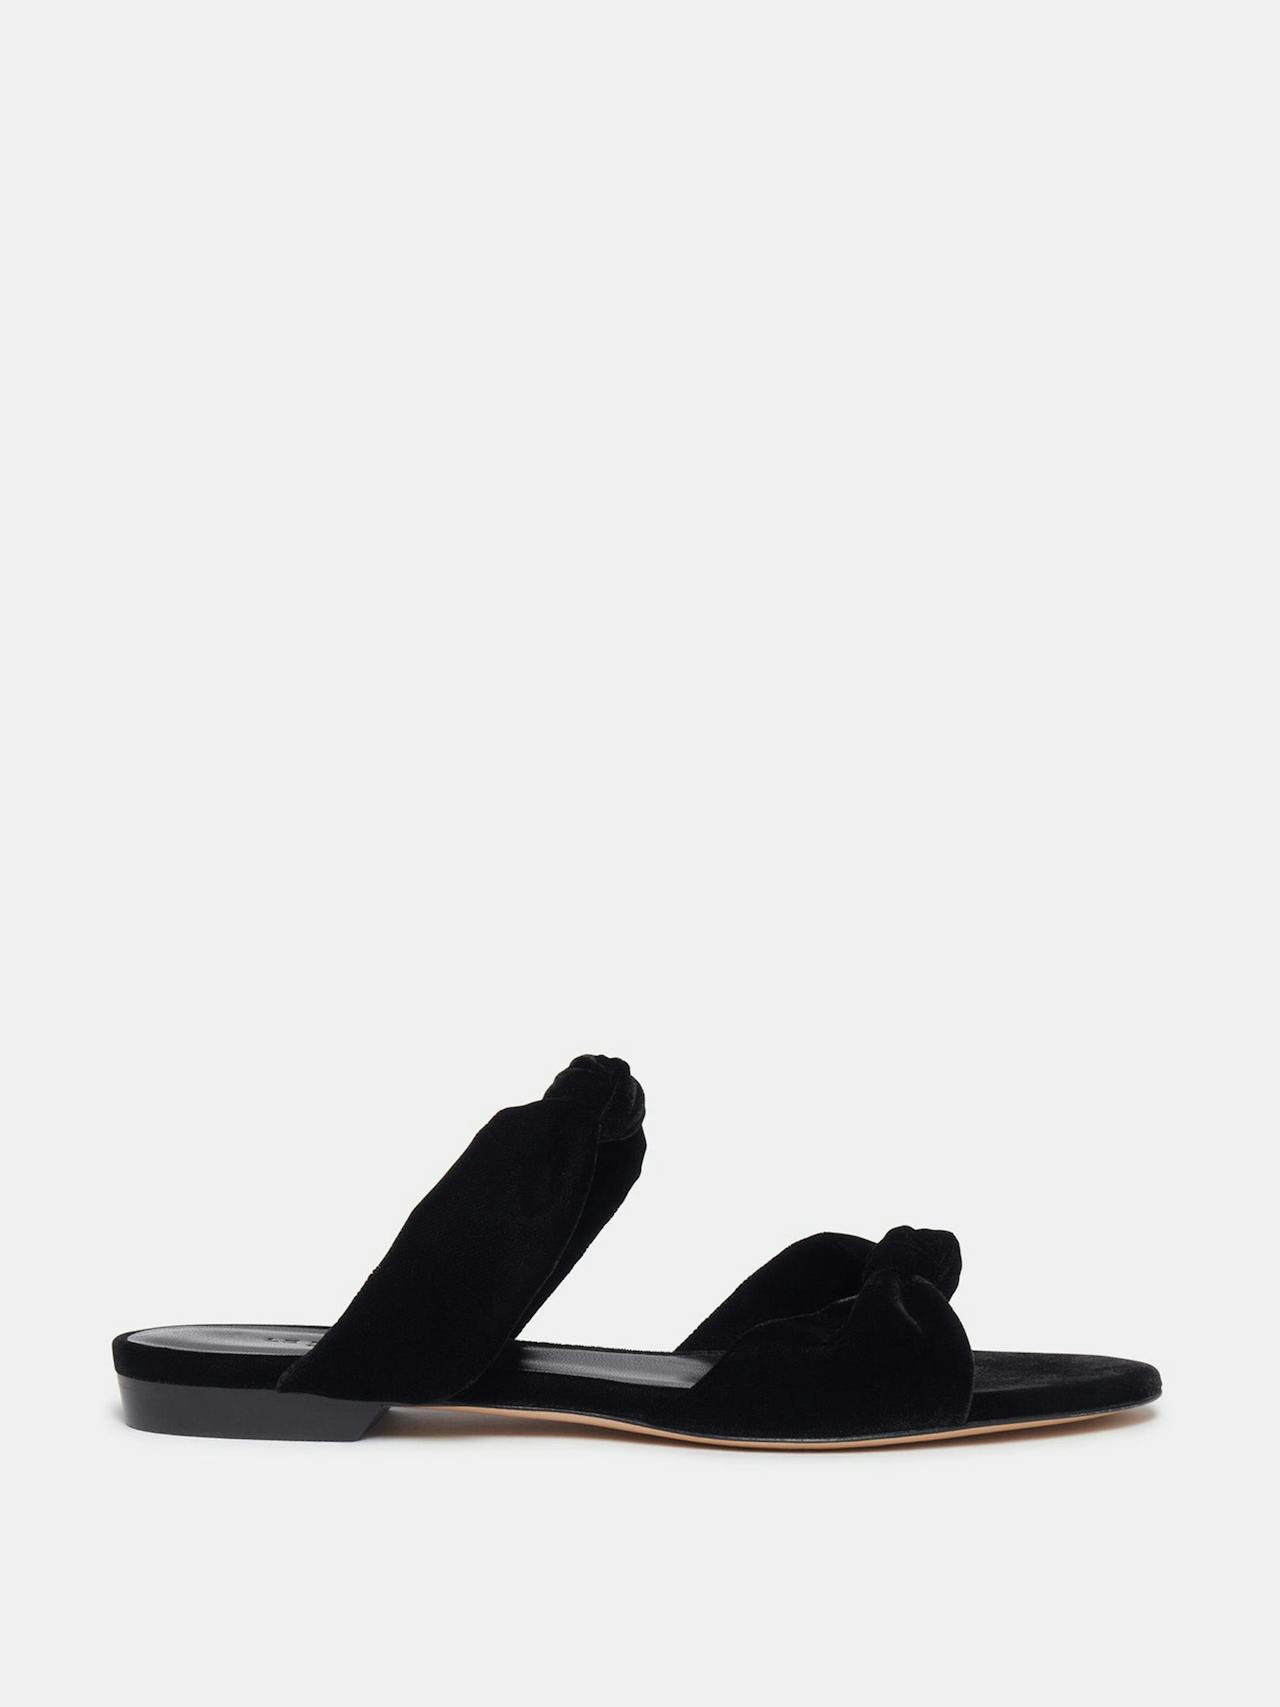 Black velvet knot flat sandals